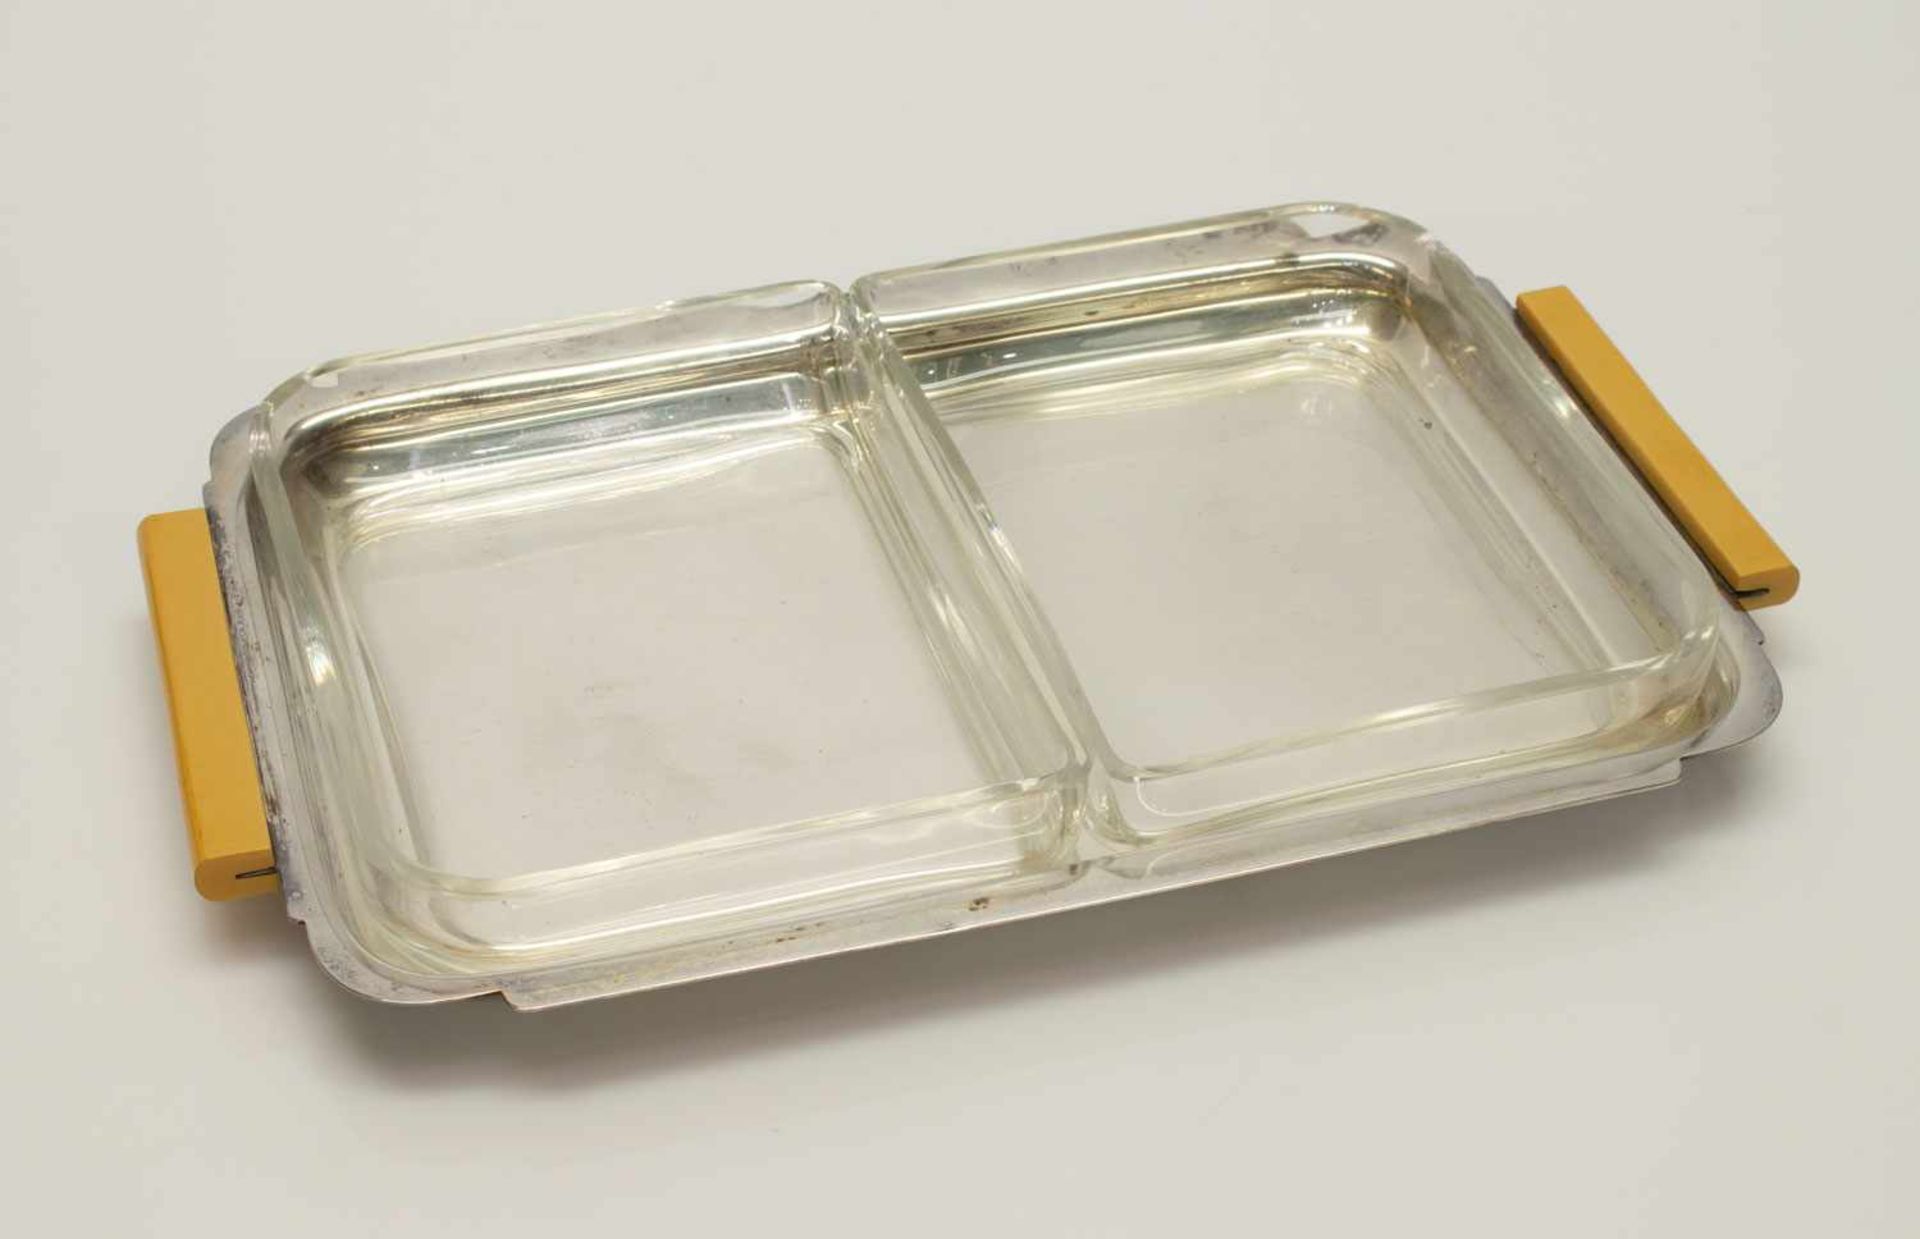 ServierplatteArt Deco um 1915, versilberte Platte mit Kunststoffhandhaben u. 2 Glaseinsätzen, 26 x